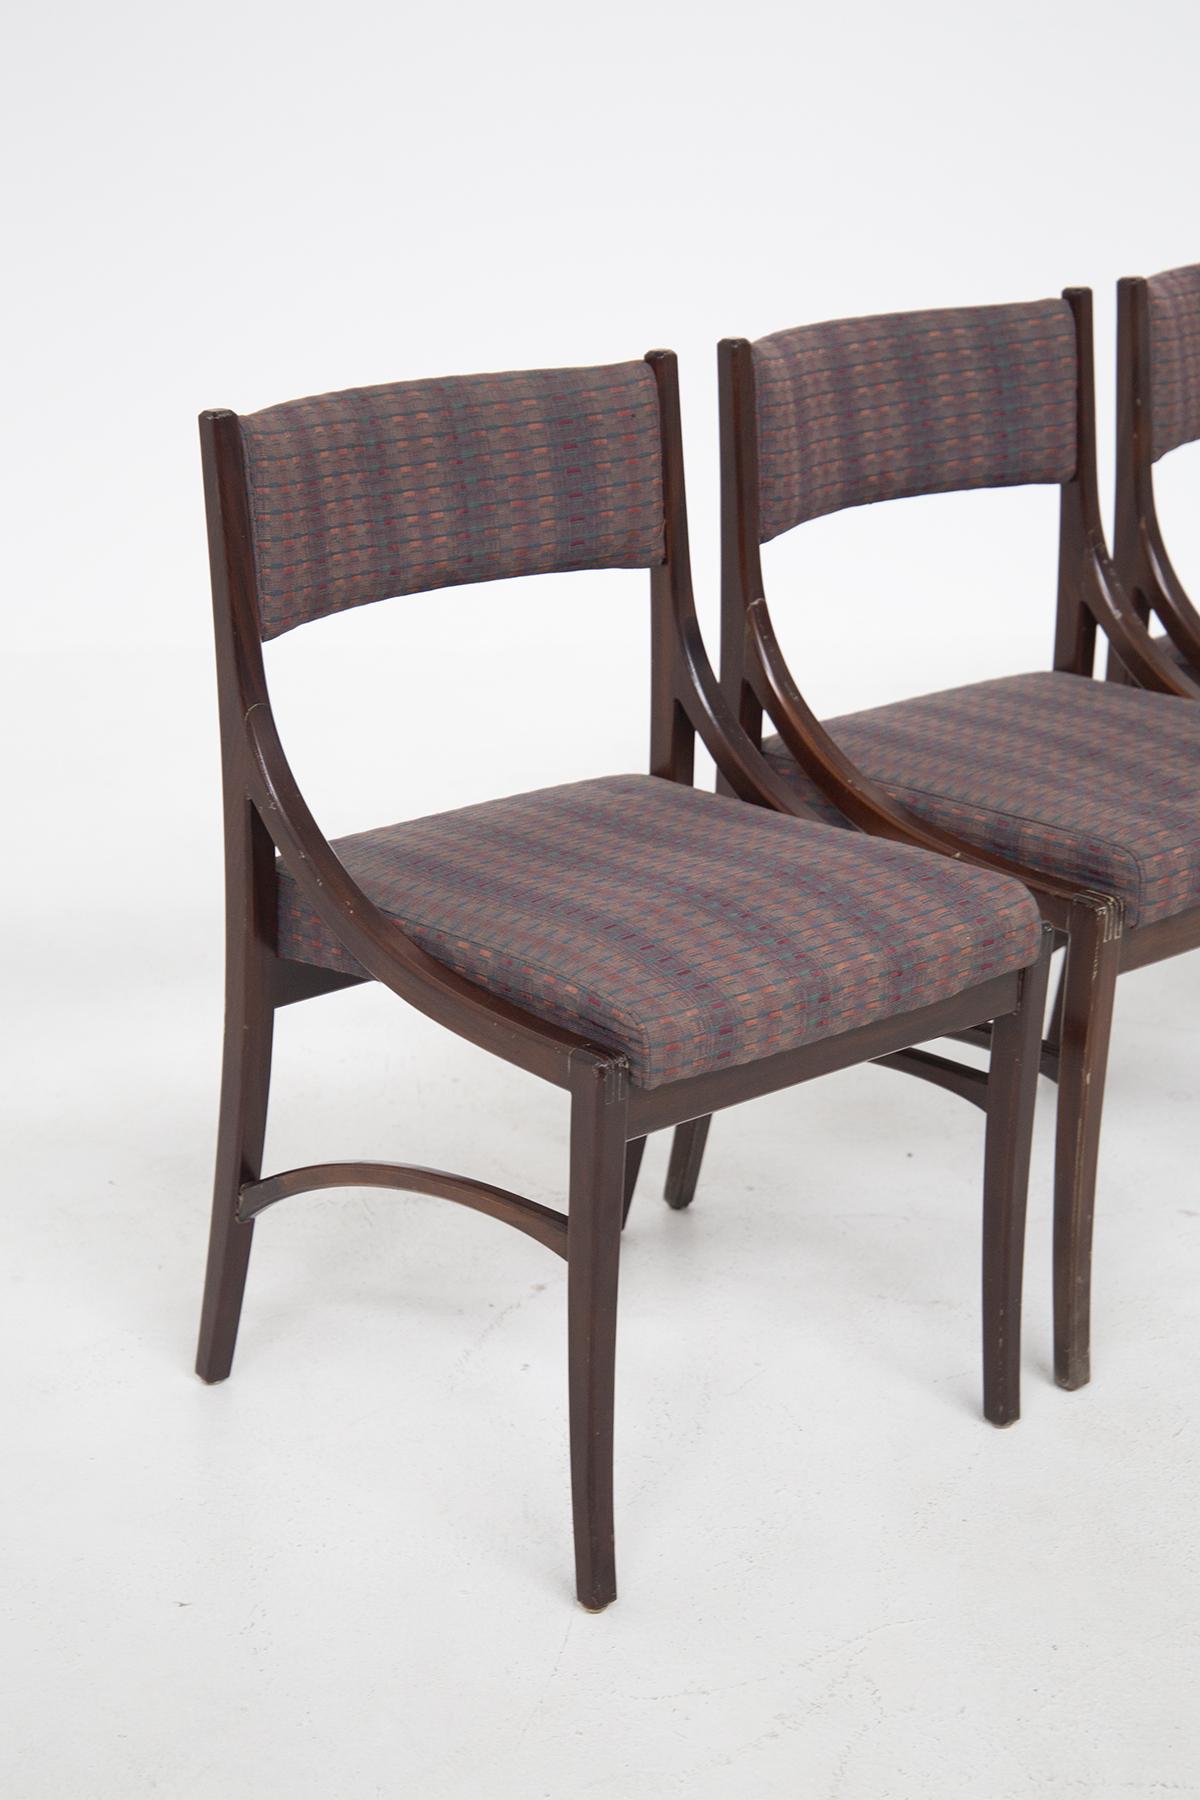 Ensemble composé de quatre chaises italiennes vintage des années 1970. Les chaises ont un cadre en bois foncé et vont encadrer l'assise avec des formes sinueuses et douces. L'assise et le dossier des chaises italiennes vintage sont réalisés dans le